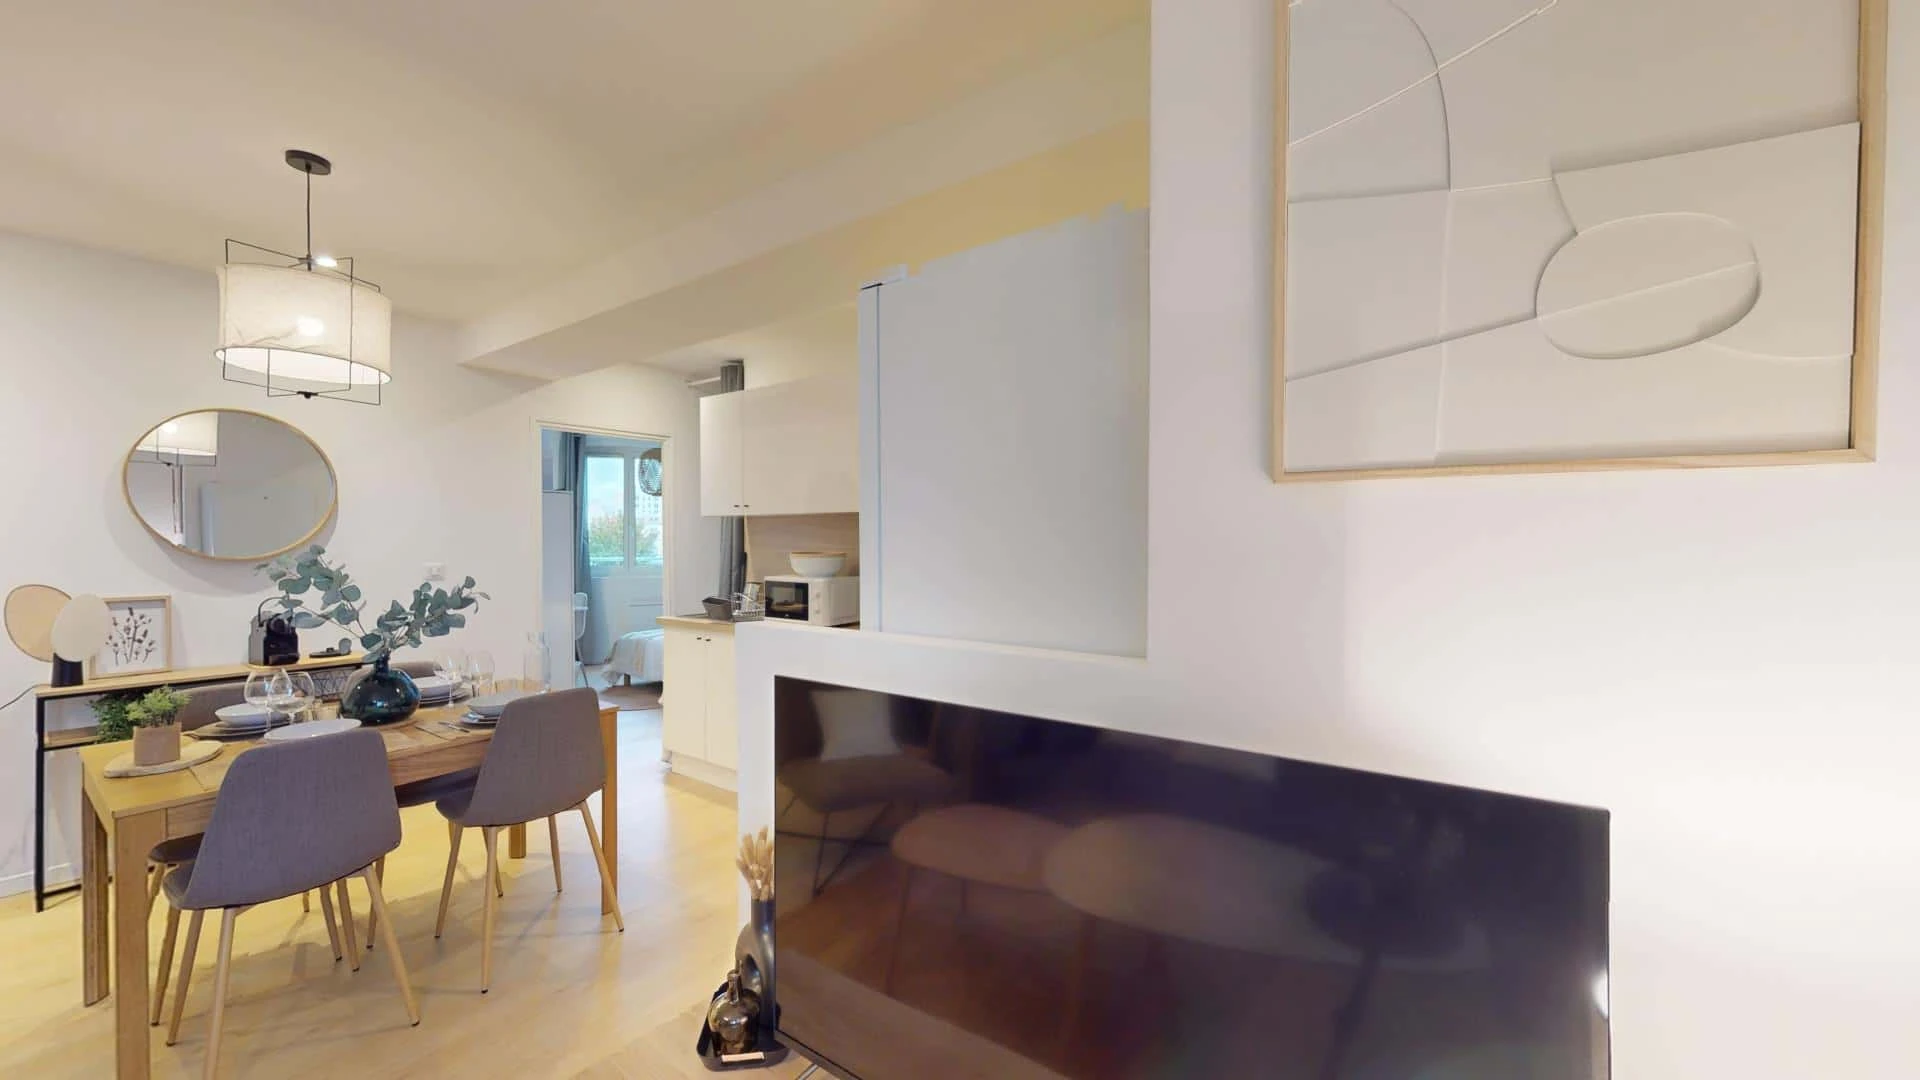 Chambre à louer dans un appartement en colocation à Dijon